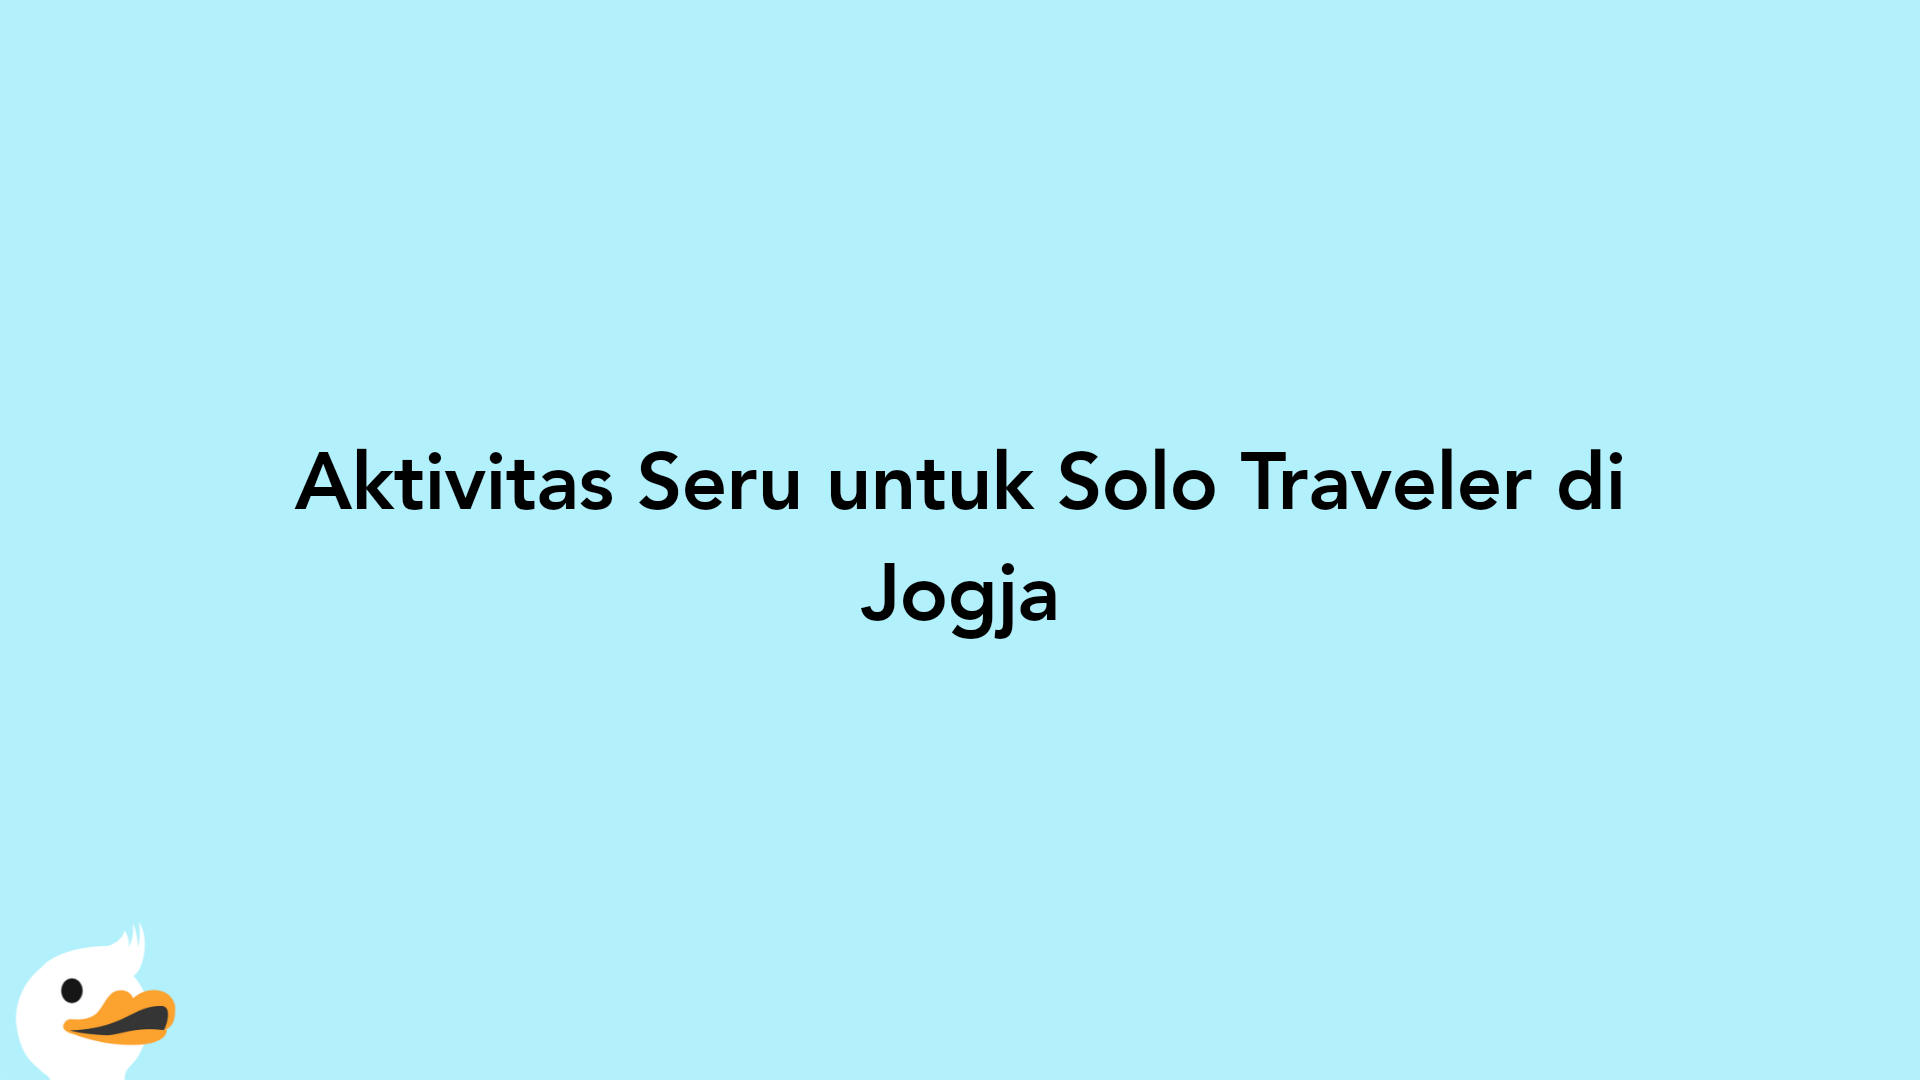 Aktivitas Seru untuk Solo Traveler di Jogja